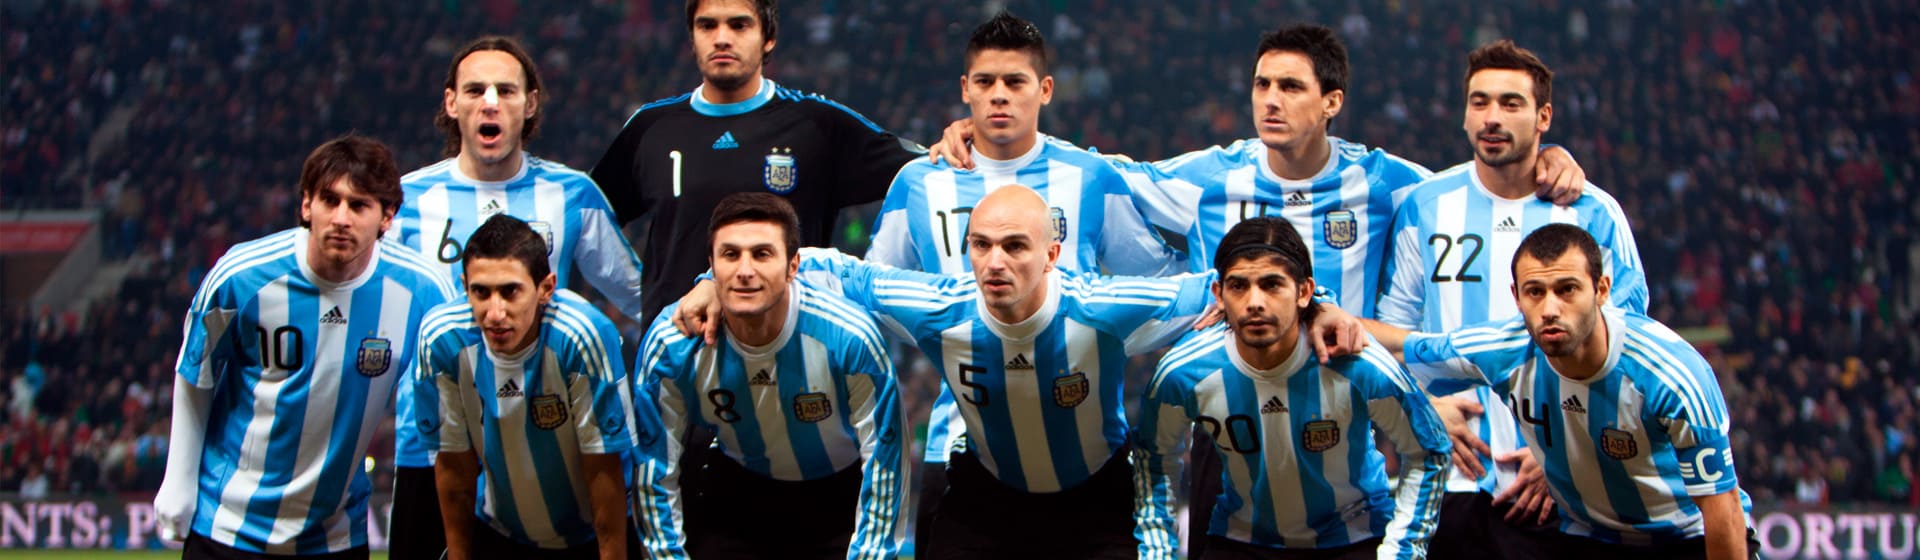 Сборная Аргентины - Футболки